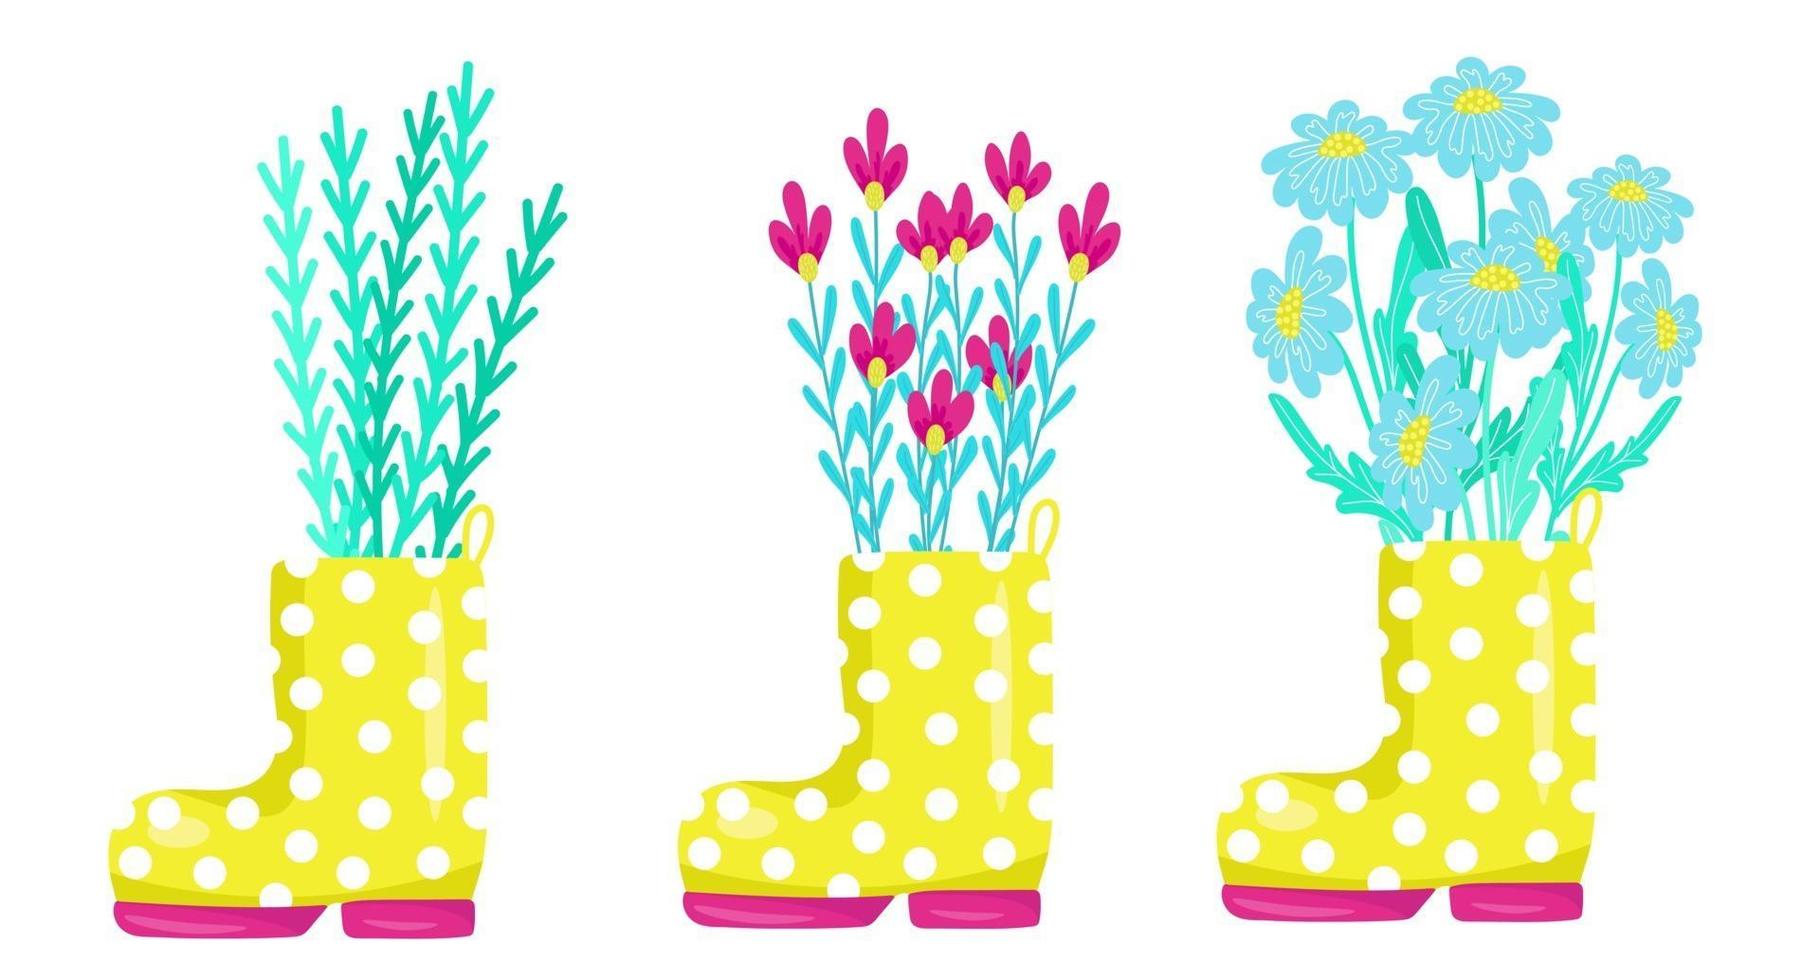 joli ensemble de fleurs de printemps dans des bottes en caoutchouc jaune, élément de conception et de décoration, composition de printemps, illustration vectorielle en style cartoon, dessin à la main. vecteur